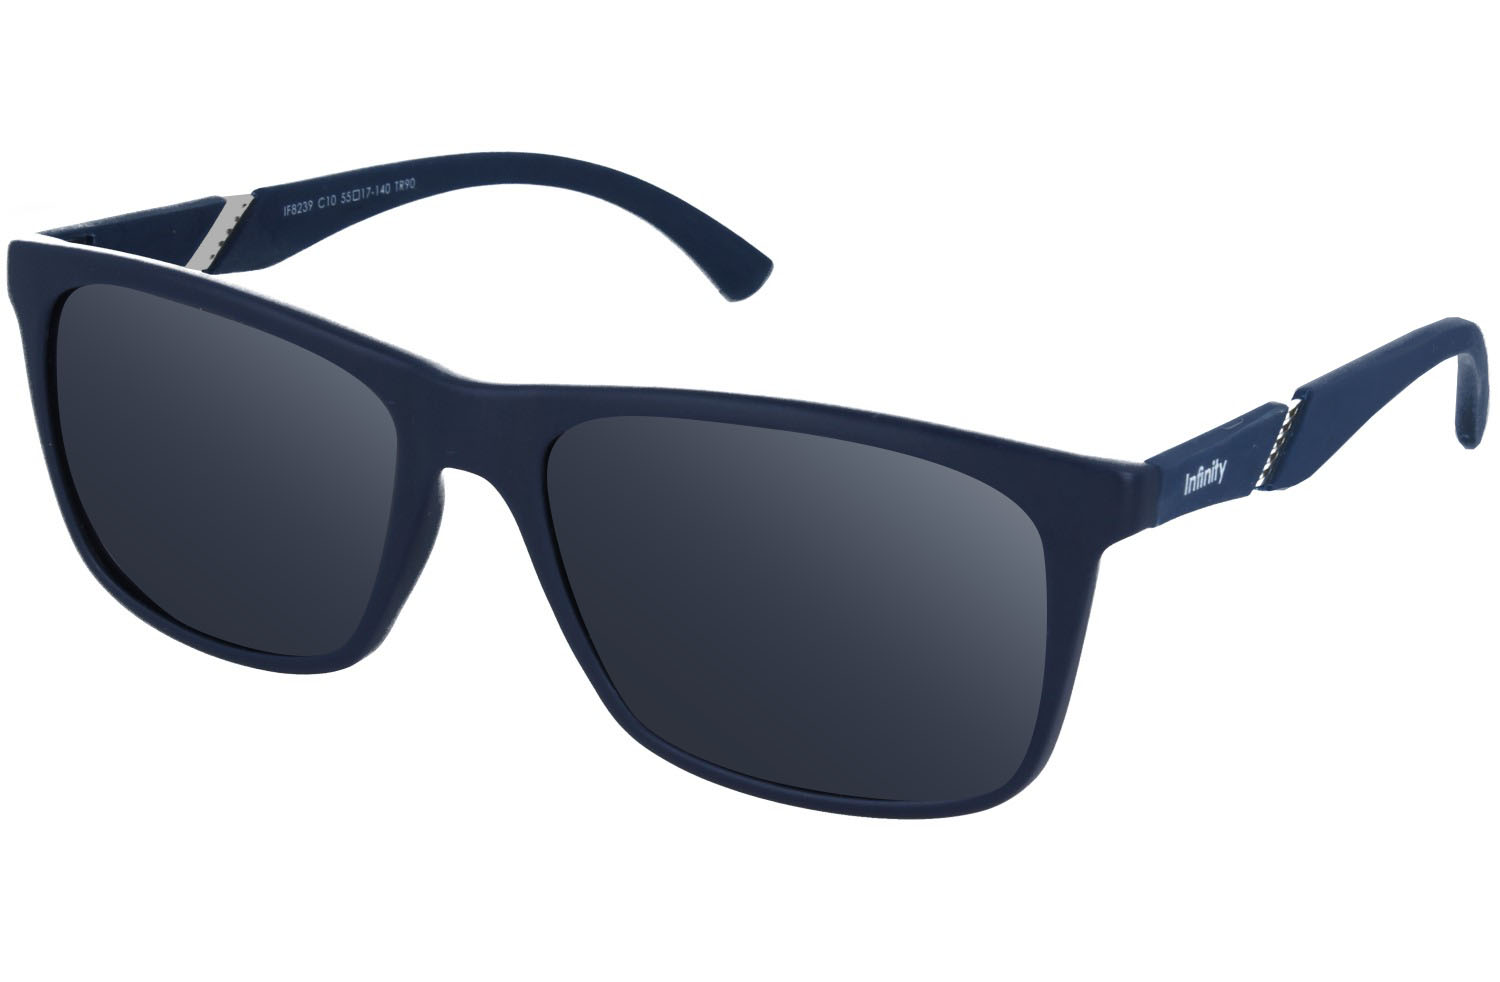 Infini If8239 Blue - Unisex Prescription Sunglasses - Spec-Savers South ...